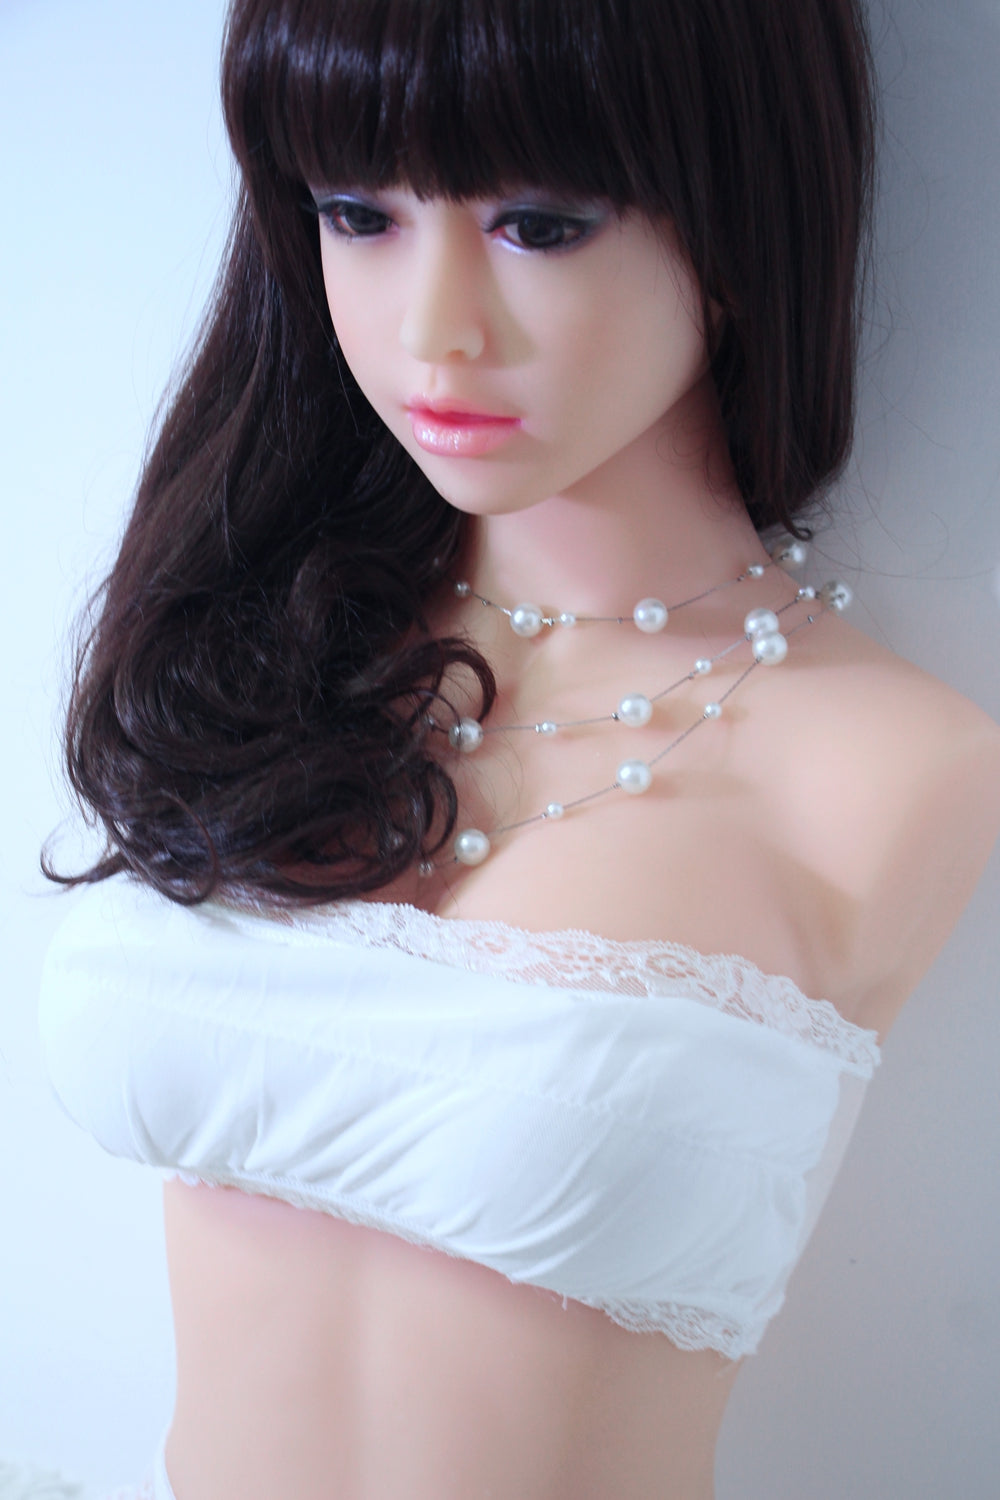 90cm schöne japanische Sexpuppe torso JY DOLL